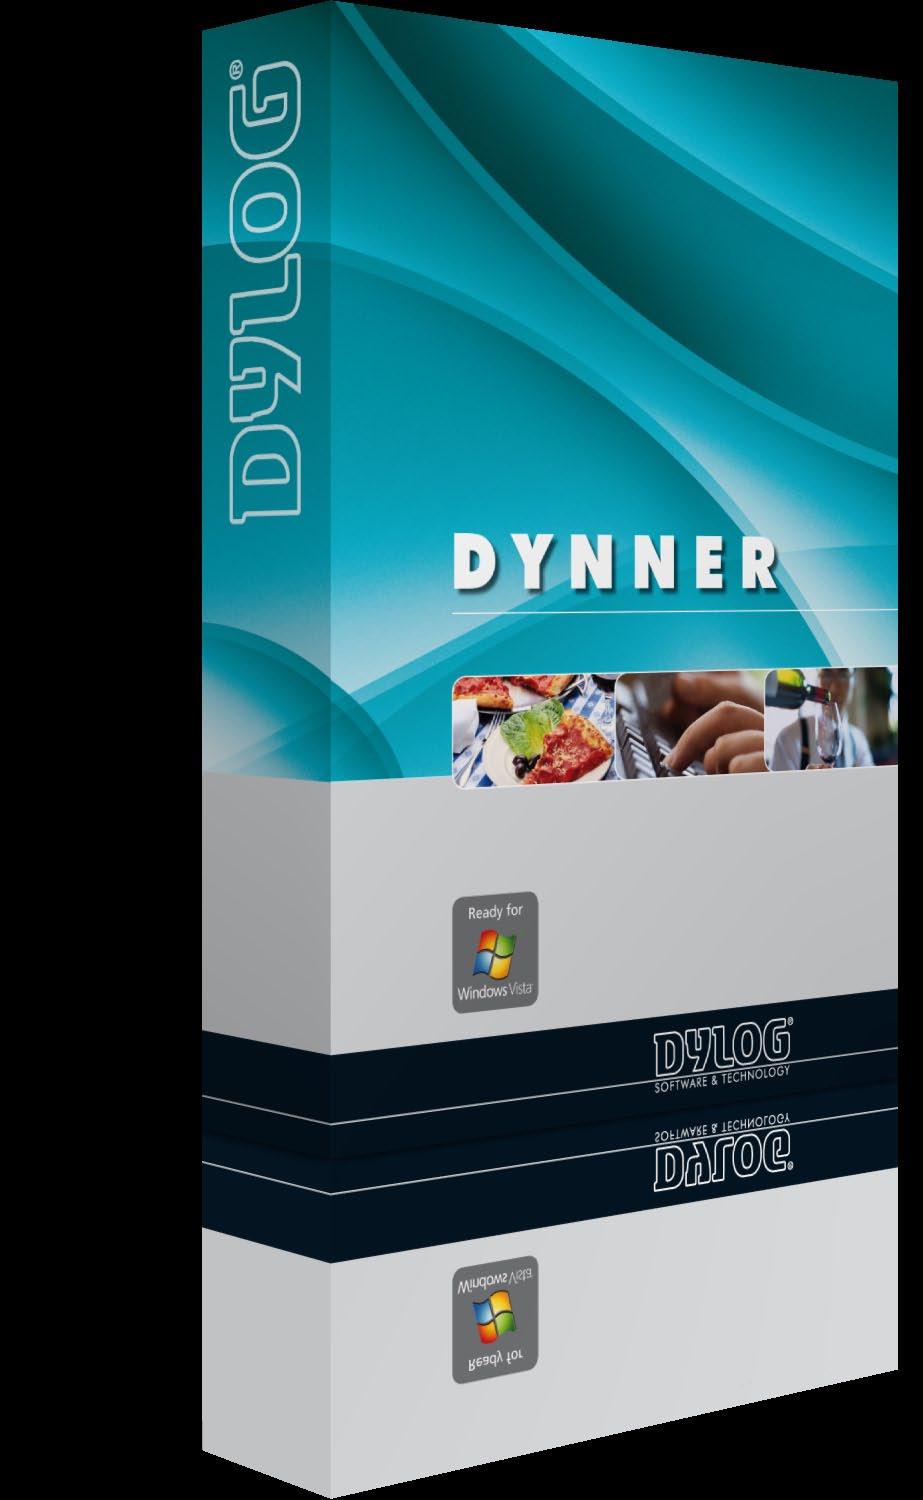 DYNNER La soluzione software completa per la